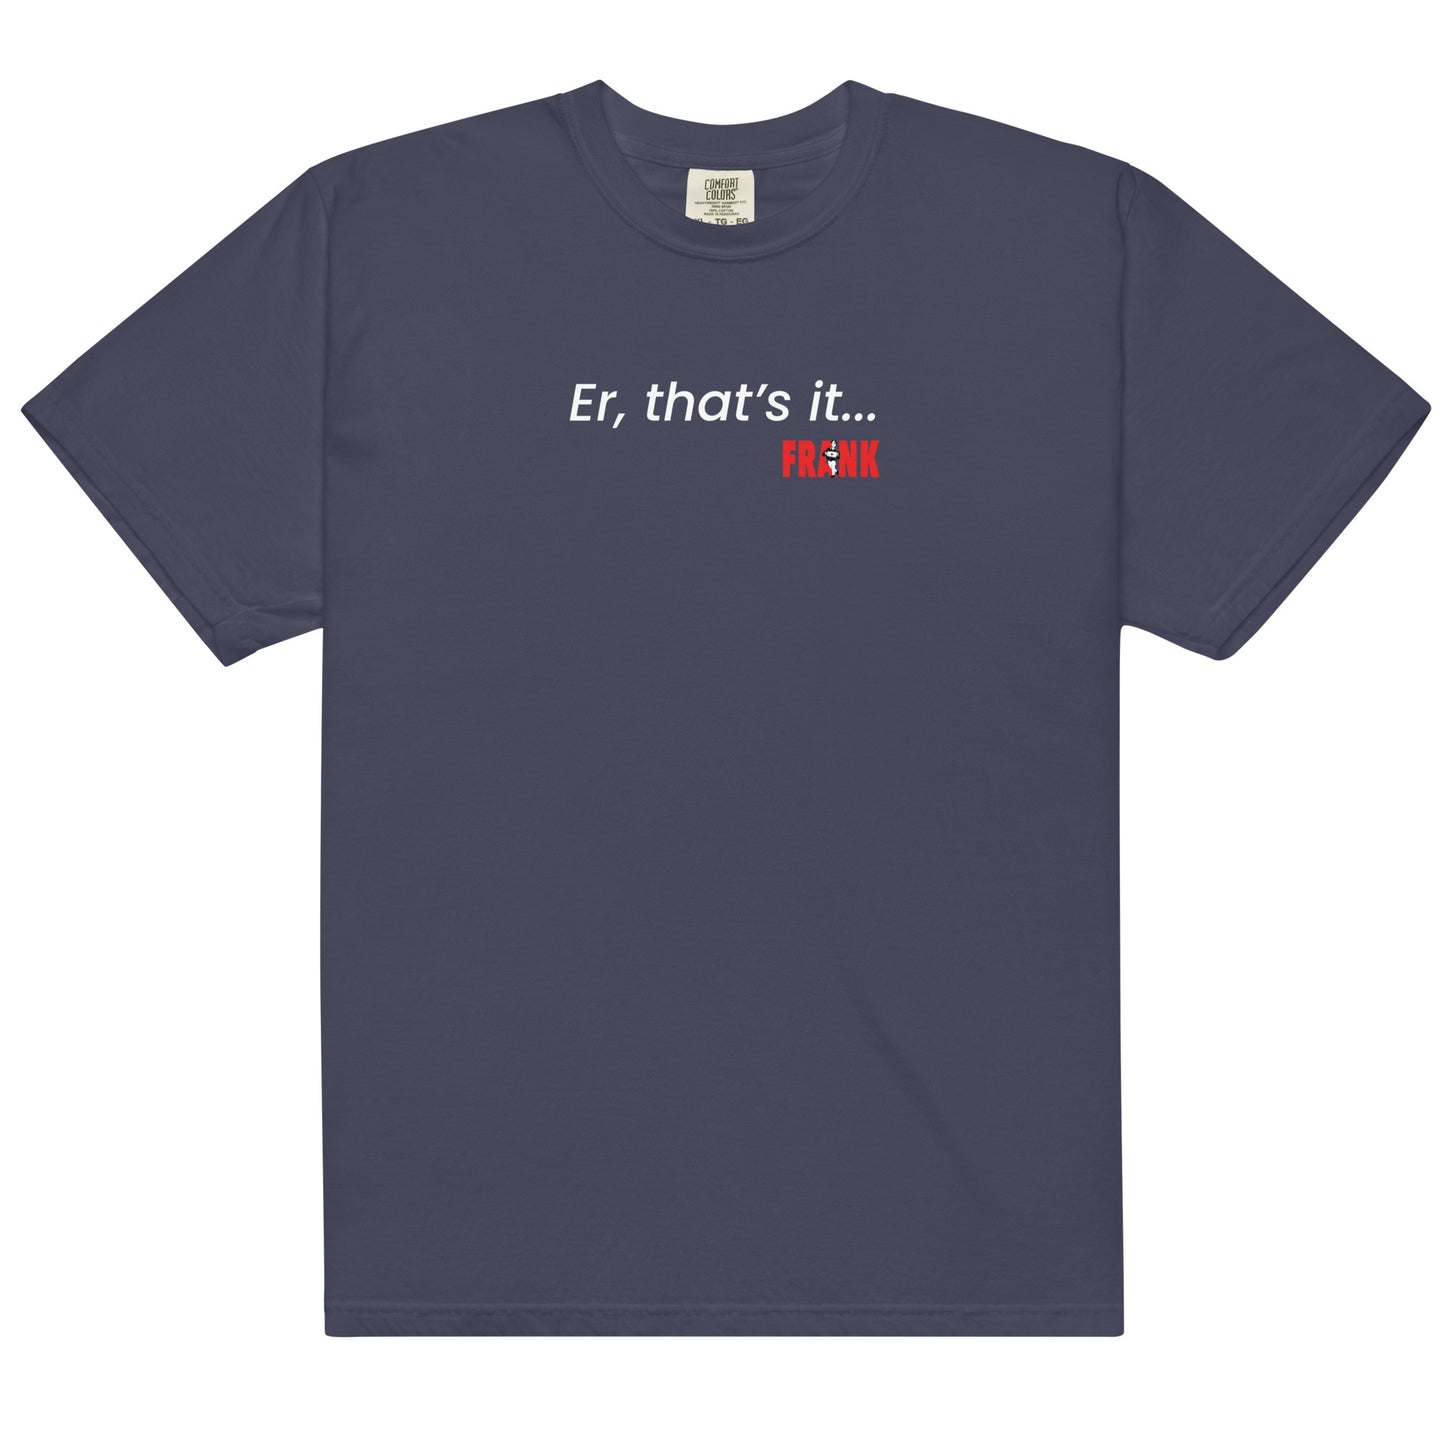 Er, that's it... Frank Men’s garment-dyed heavyweight t-shirt